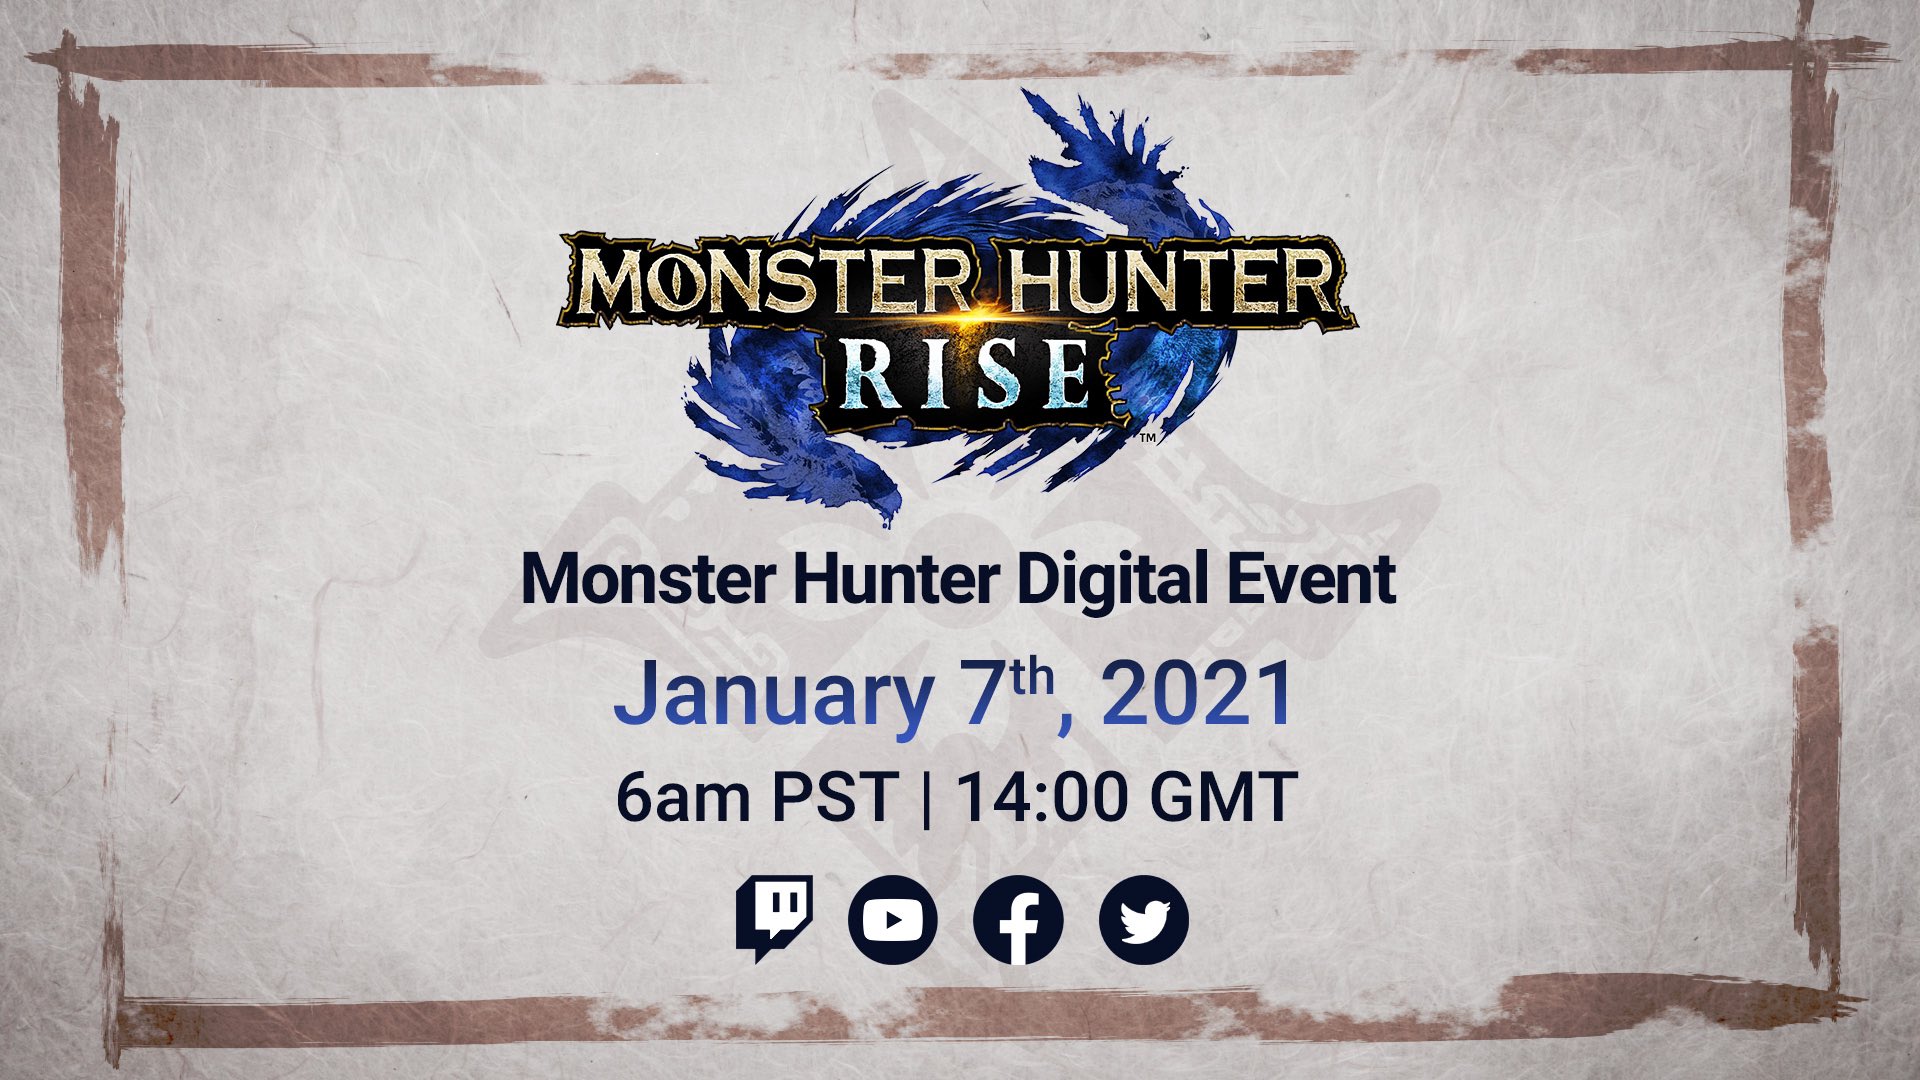 image diffusée sur le compte officiel Twitter de Monster Hunter